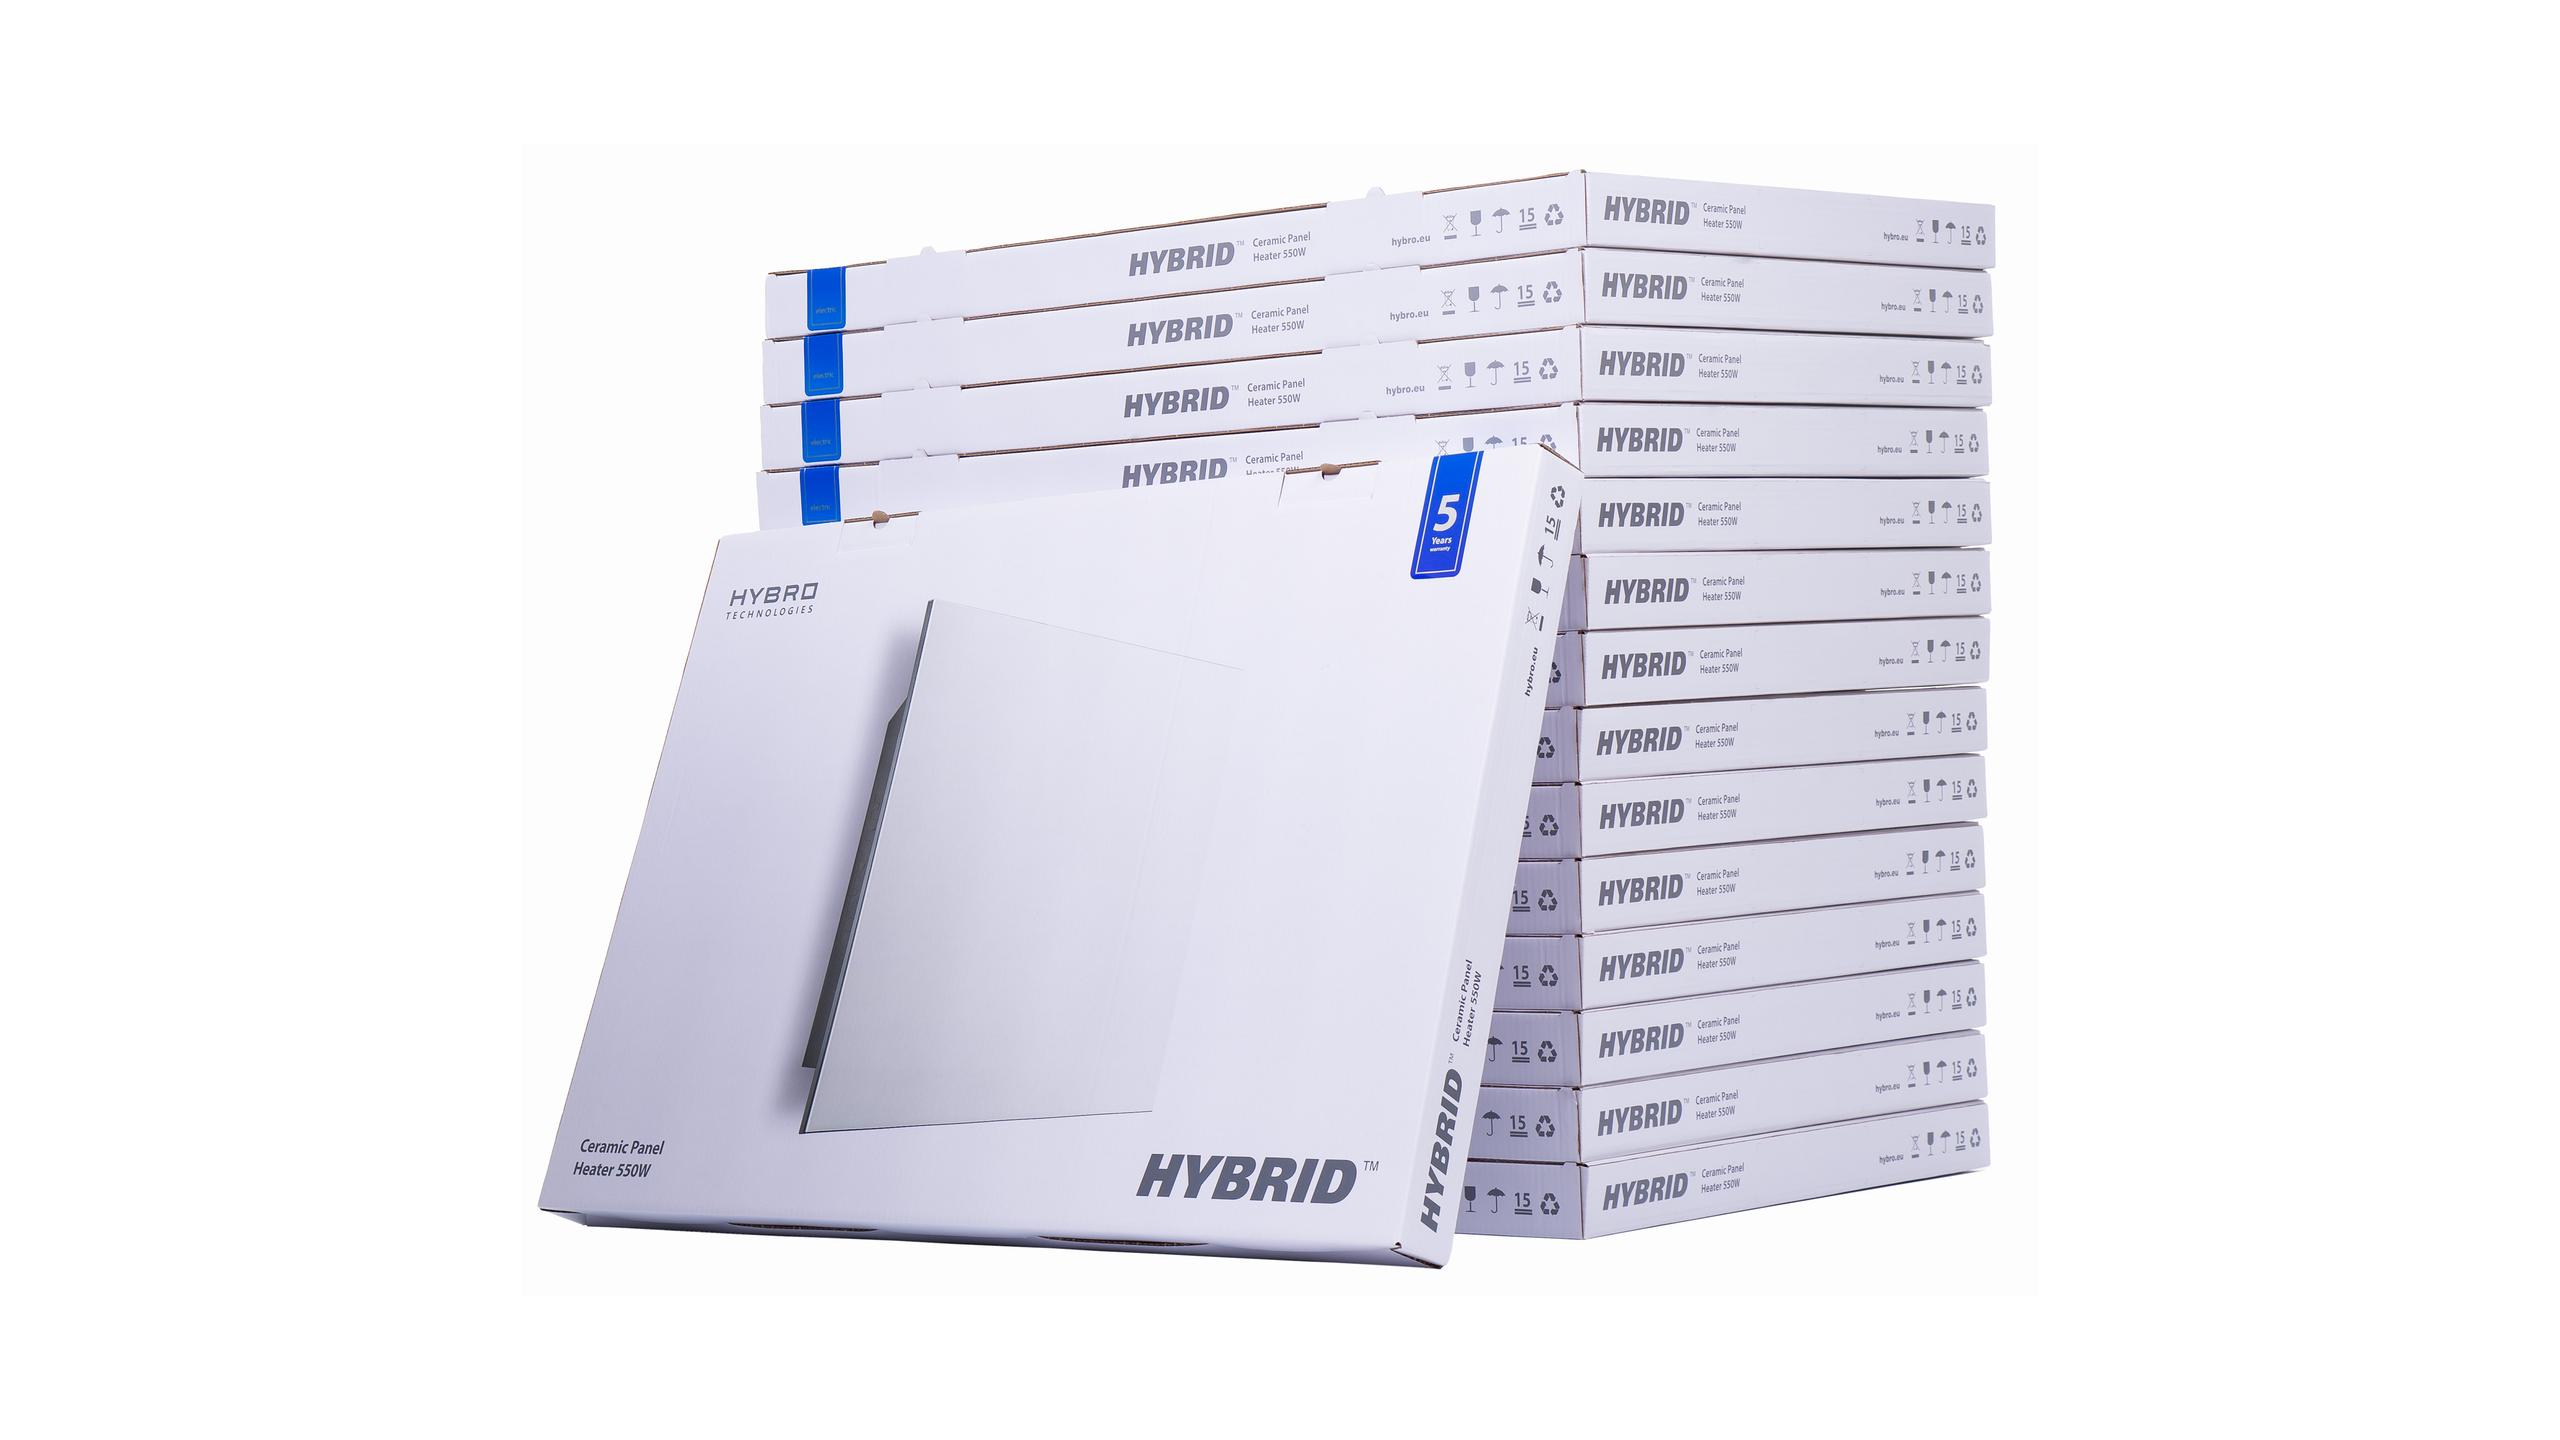 HYBRID 550W (bianco)